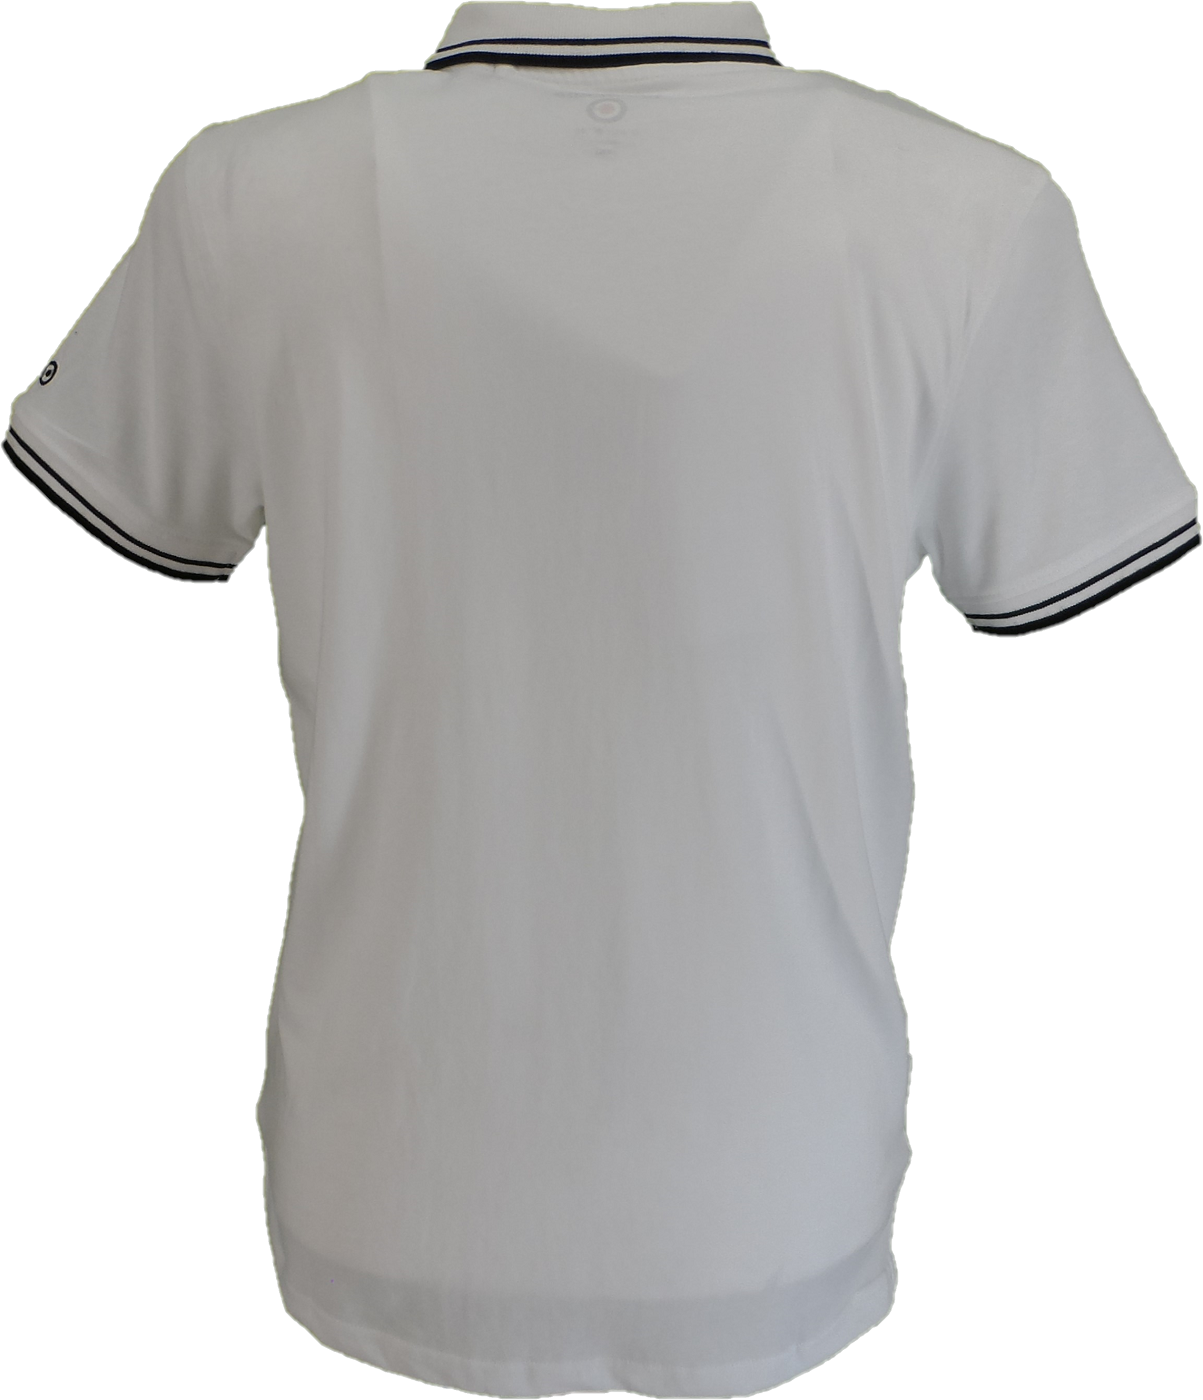 Lambrettaホワイト & ブラック レトロ ツートーン チップ ポロシャツ